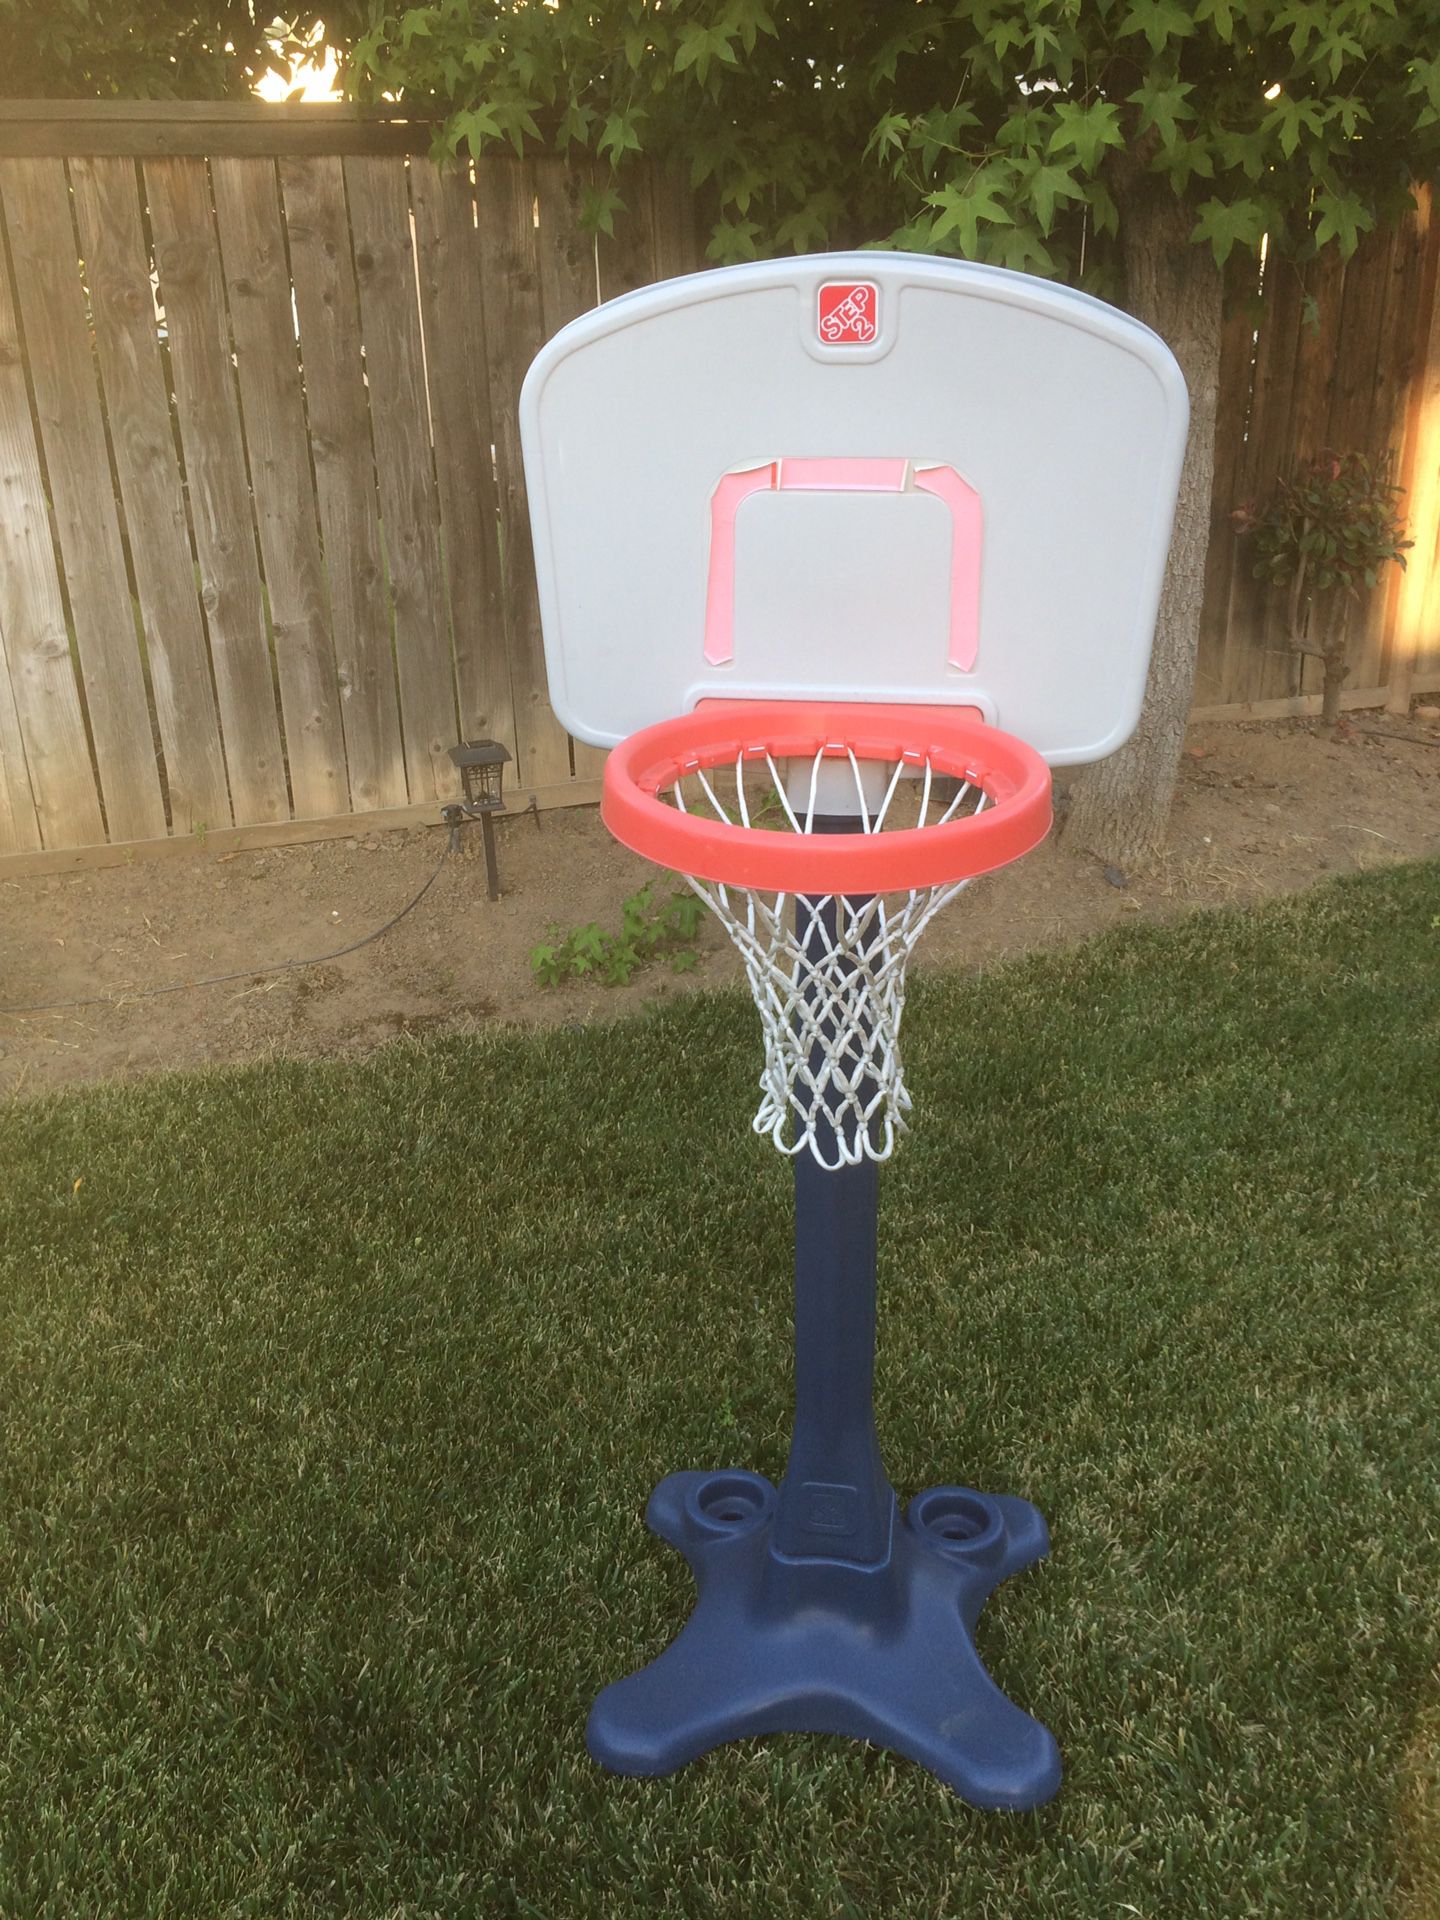 Selling a kids 2step basketball hoop